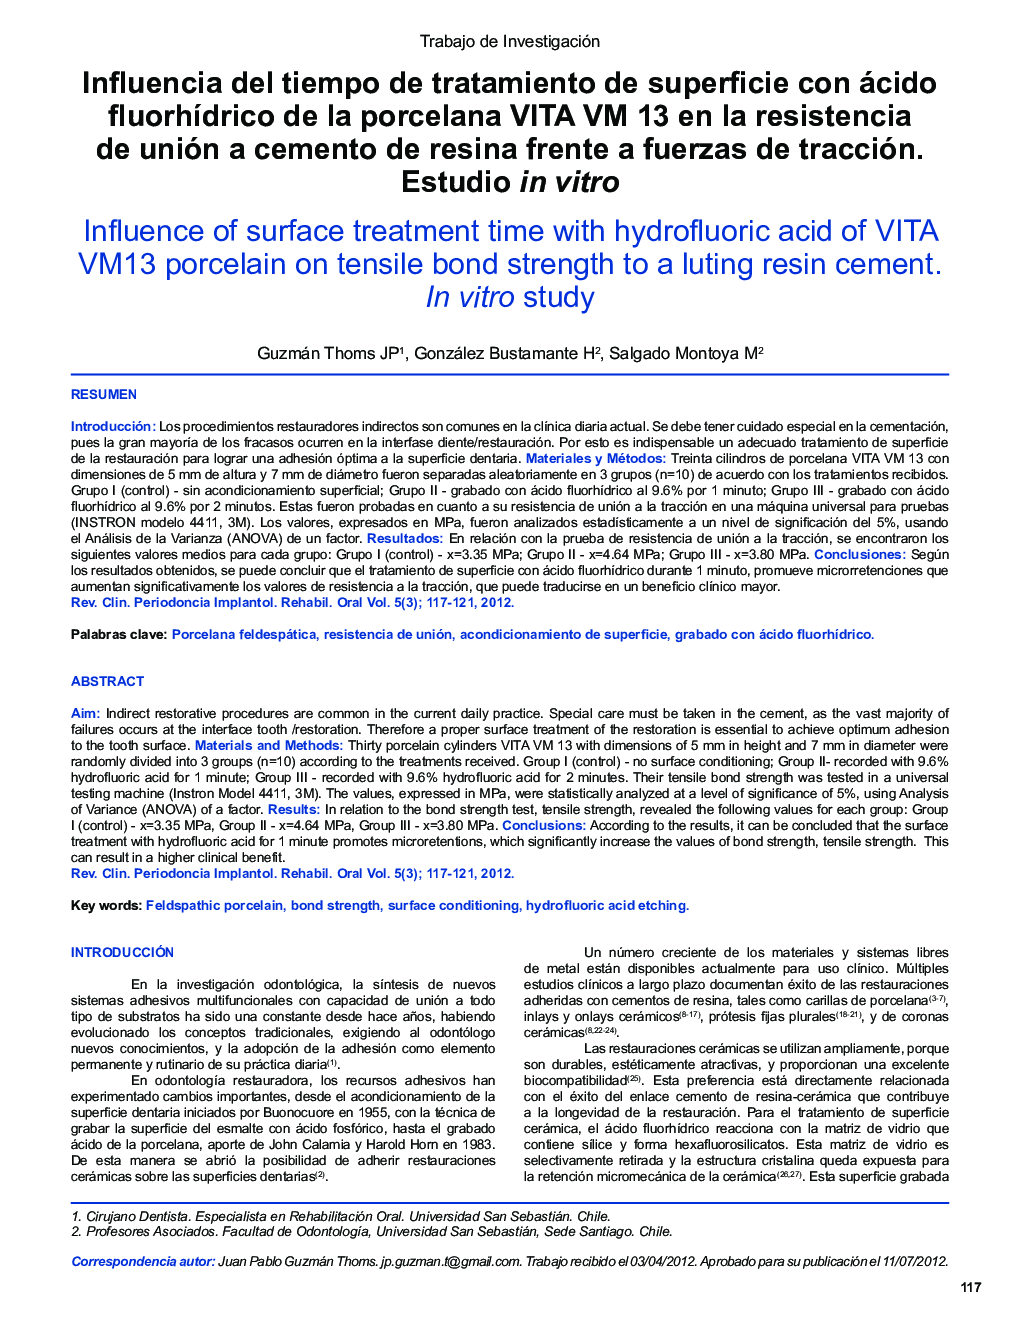 Influencia del tiempo de tratamiento de superficie con ácido fluorhídrico de la porcelana VITA VM 13 en la resistencia de unión a cemento de resina frente a fuerzas de tracción. Estudio in vitro